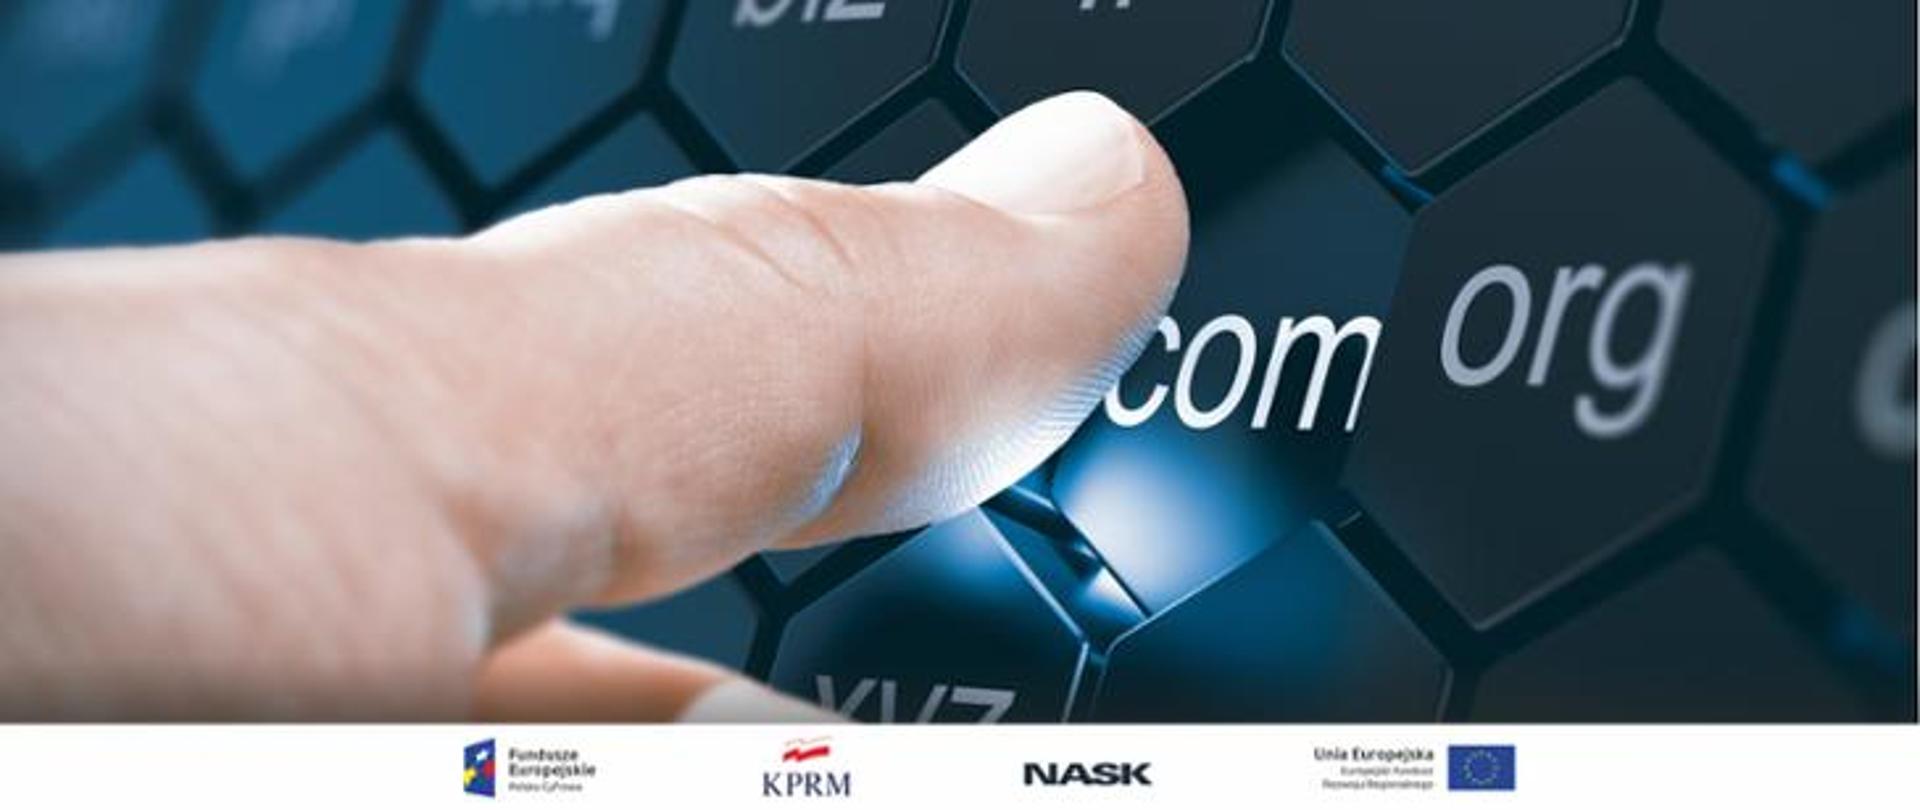 zdjęcie dłoni wskazującej palcem klawiaturę komputera z napisem com